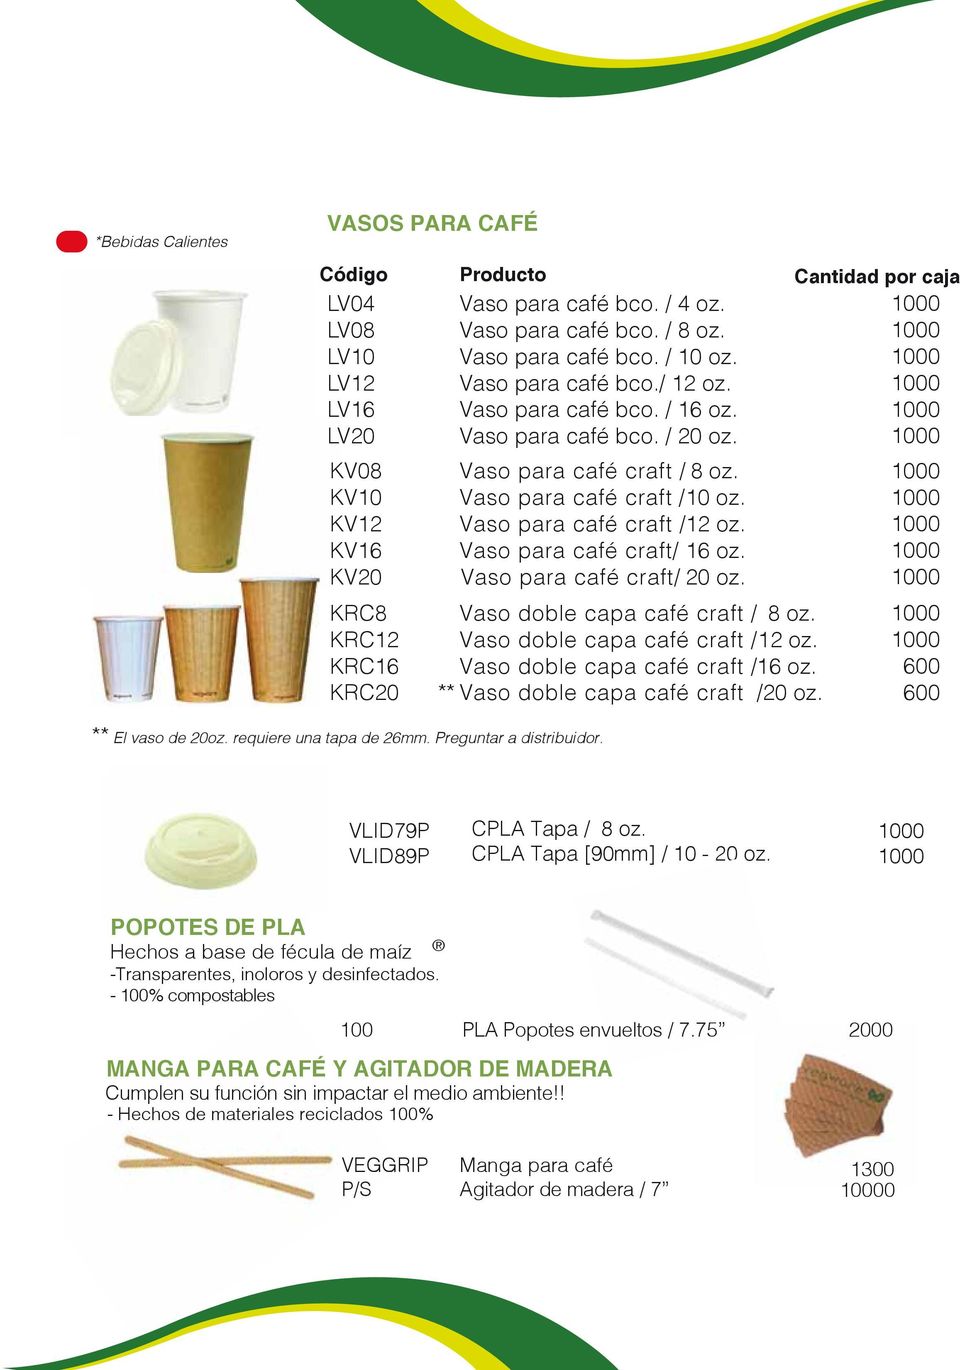 Vaso para café craft/ 16 oz. Vaso para café craft/ 20 oz. KRC8 KRC12 KRC16 KRC20 Vaso doble capa café craft / 8 oz. Vaso doble capa café craft / 12 oz. Vaso doble capa café craft / 16 oz.